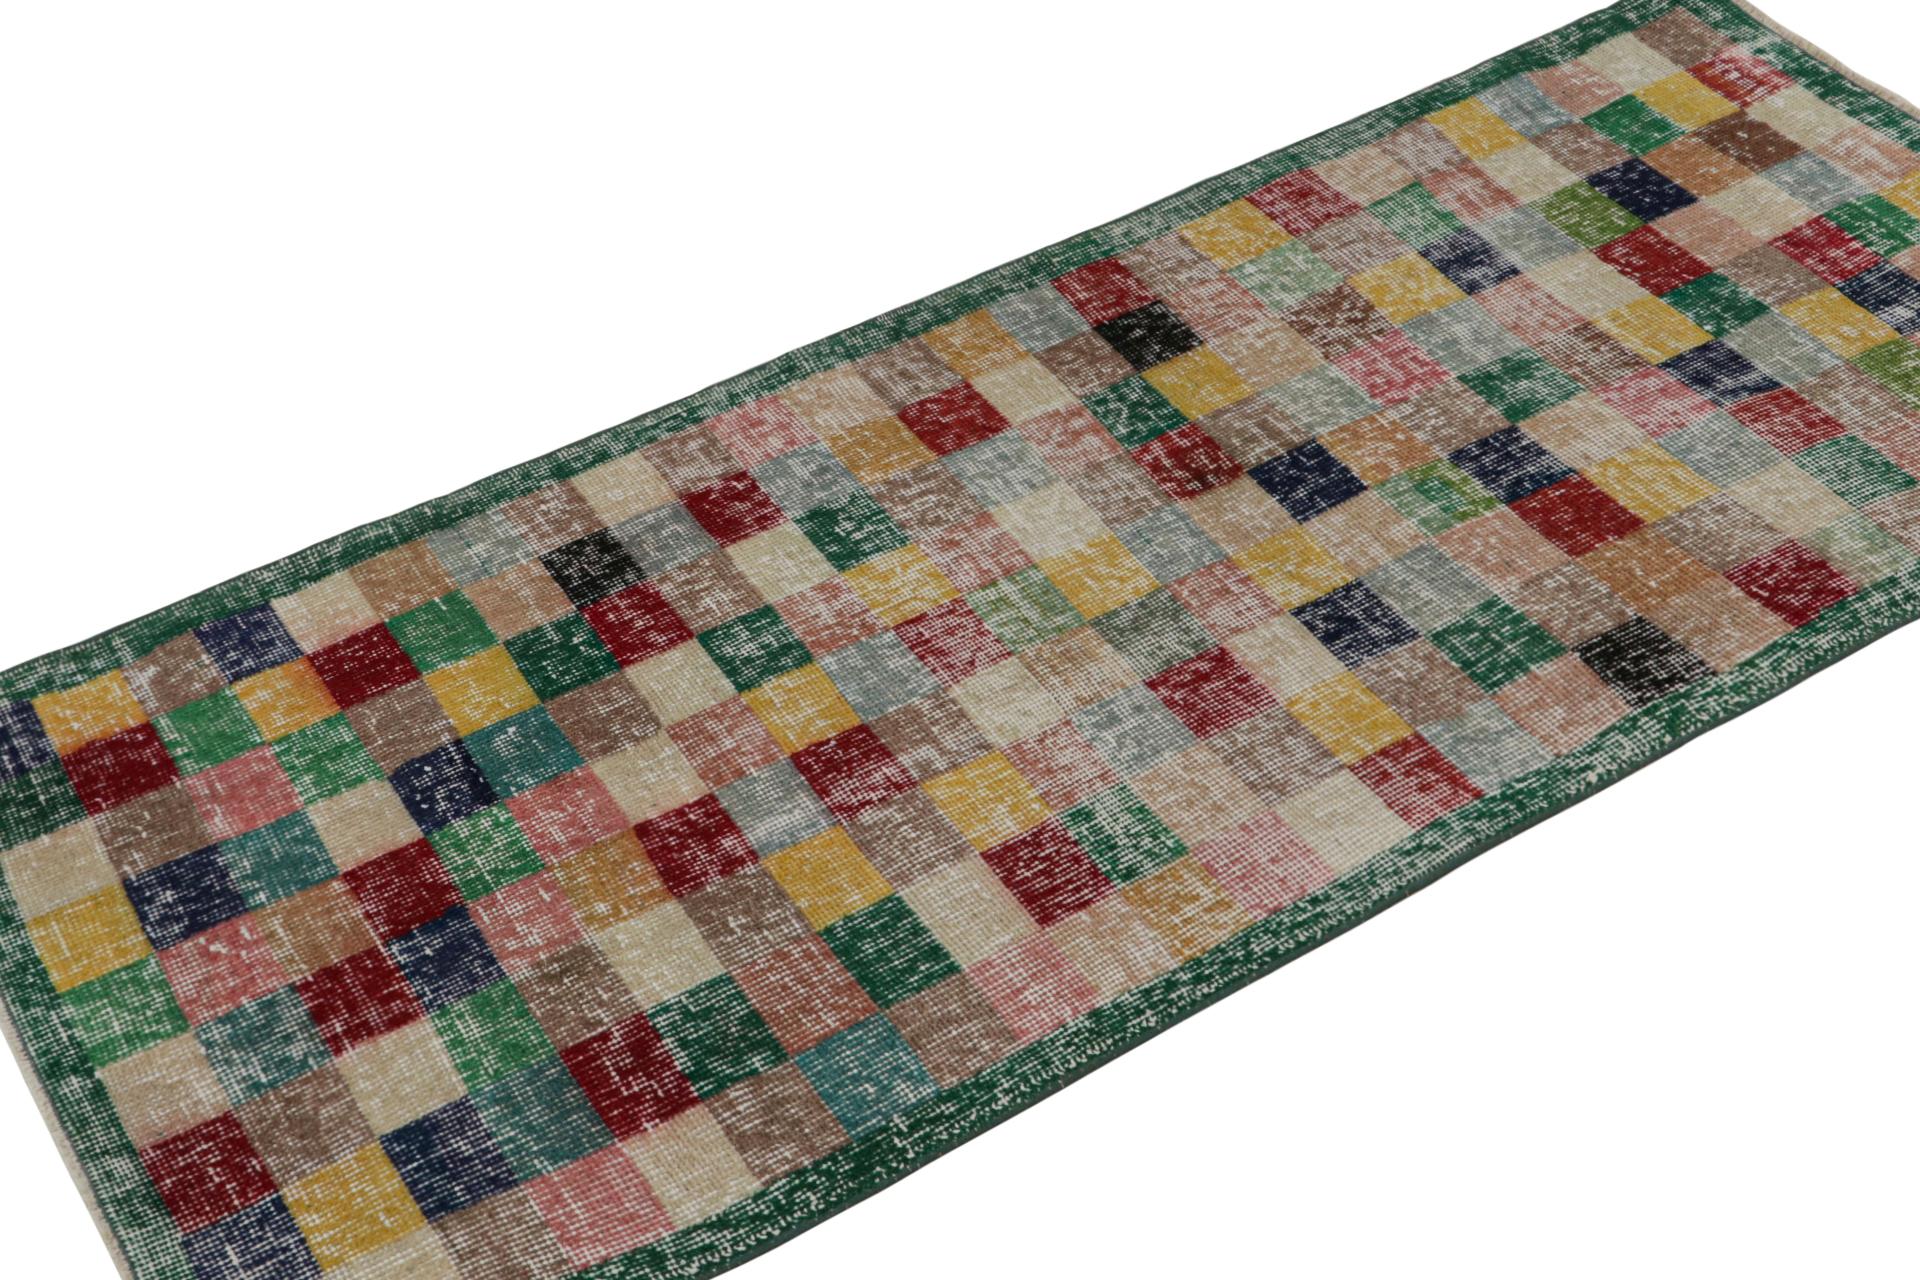 Dieser handgeknüpfte Art-Déco-Teppich (2x5) aus Wolle, ca. 1960-1970, ist eine Interpretation des Art-Déco und des kubistischen Stils aus der Mitte des Jahrhunderts, mit Zeki Murens begehrtem Sinn für spielerische Farben und Bewegung.  

Über das